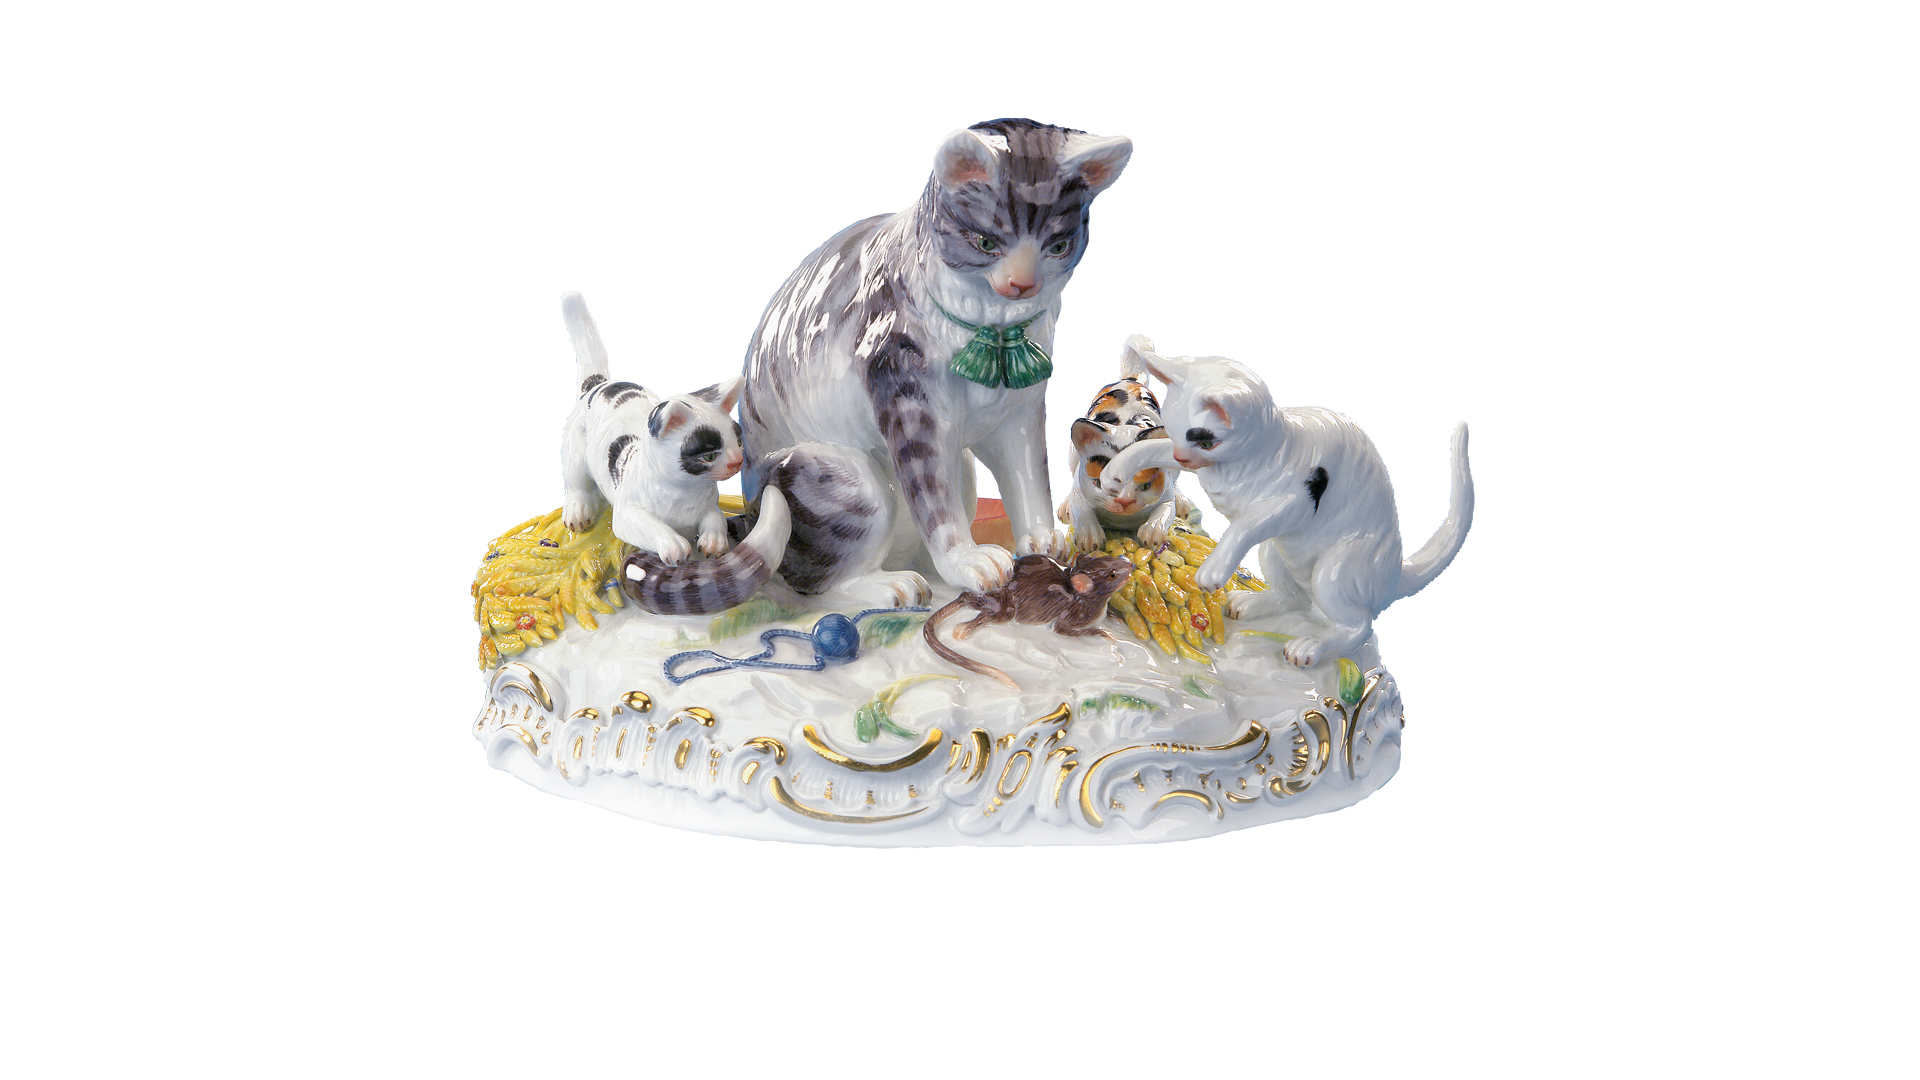 Фигурка Meissen 13 см Кошка и котята, играющие с мышкой